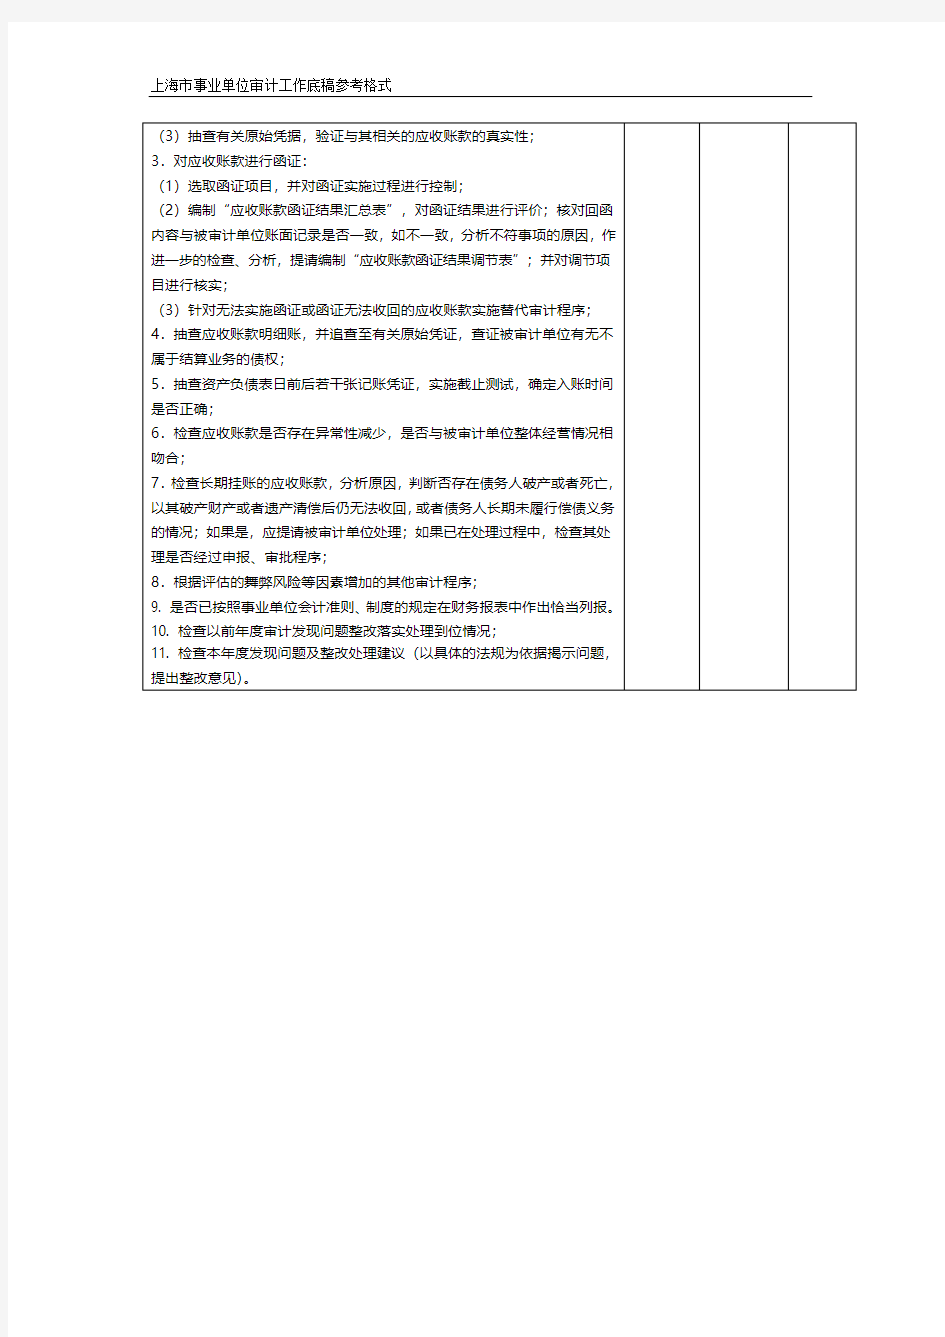 上海市事业单位审计应收账款审计工作底稿